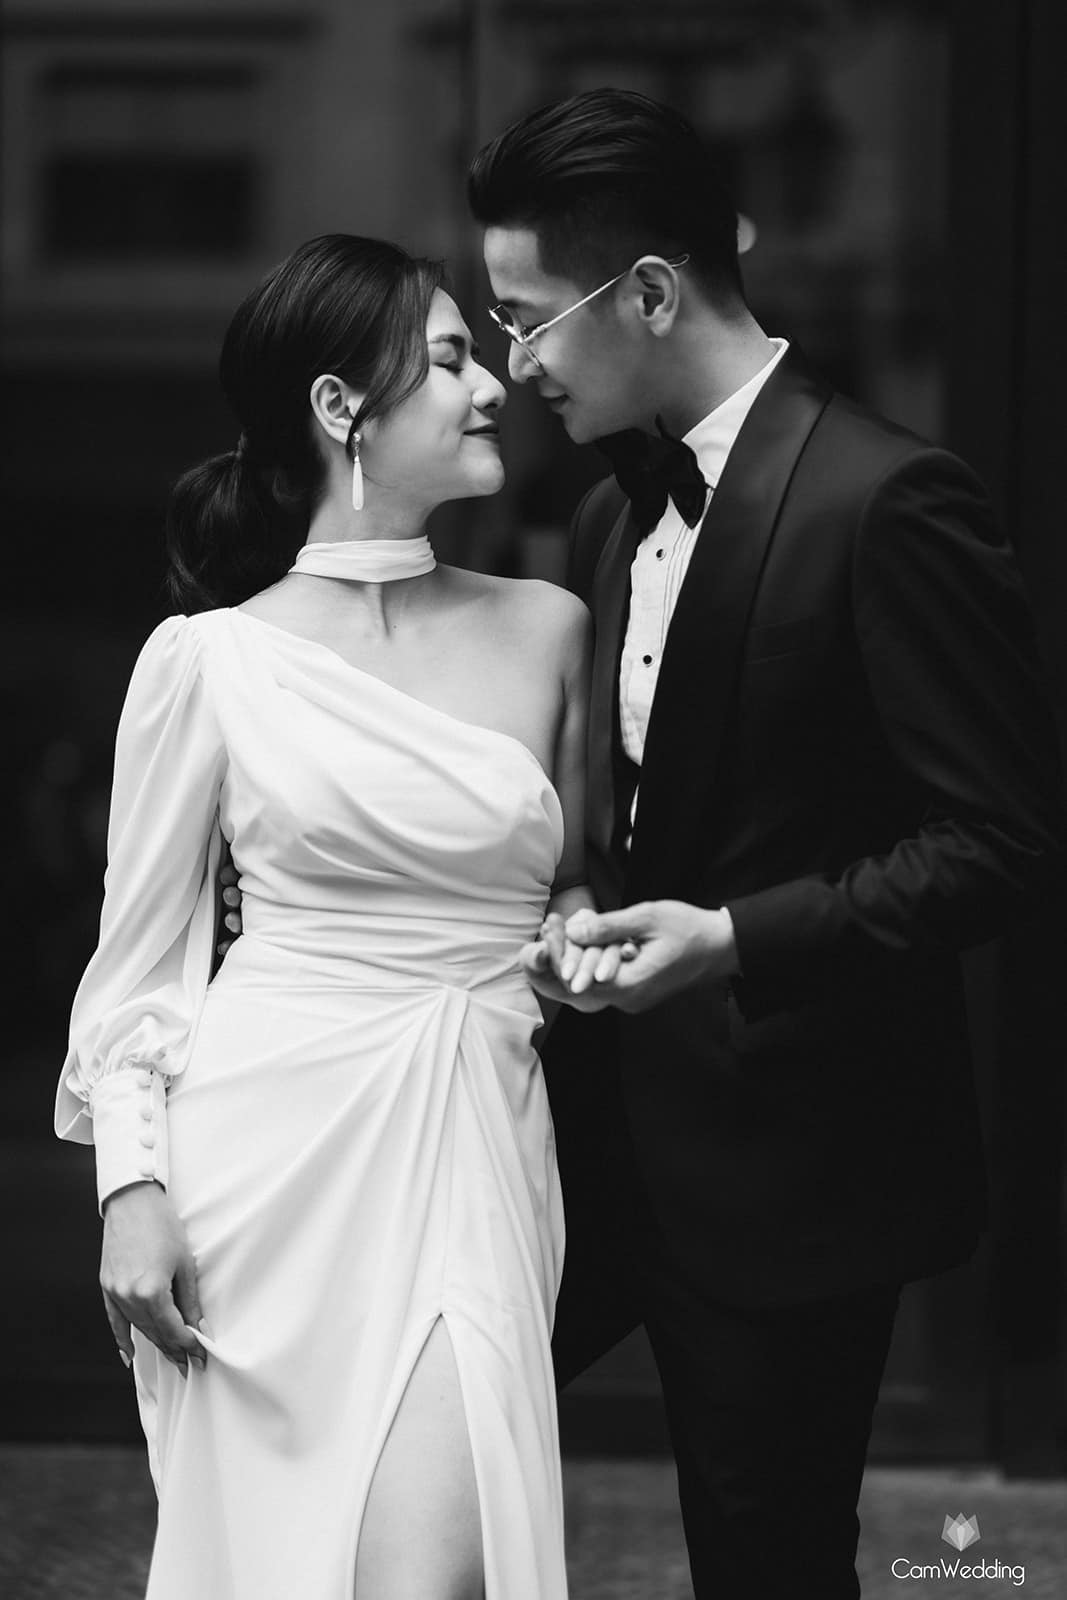 Việt Hoa 'Em gái Phương Oanh' tung bộ ảnh đẹp lung linh với bạn trai khiến netizen cứ ngỡ ảnh cưới - Ảnh 8